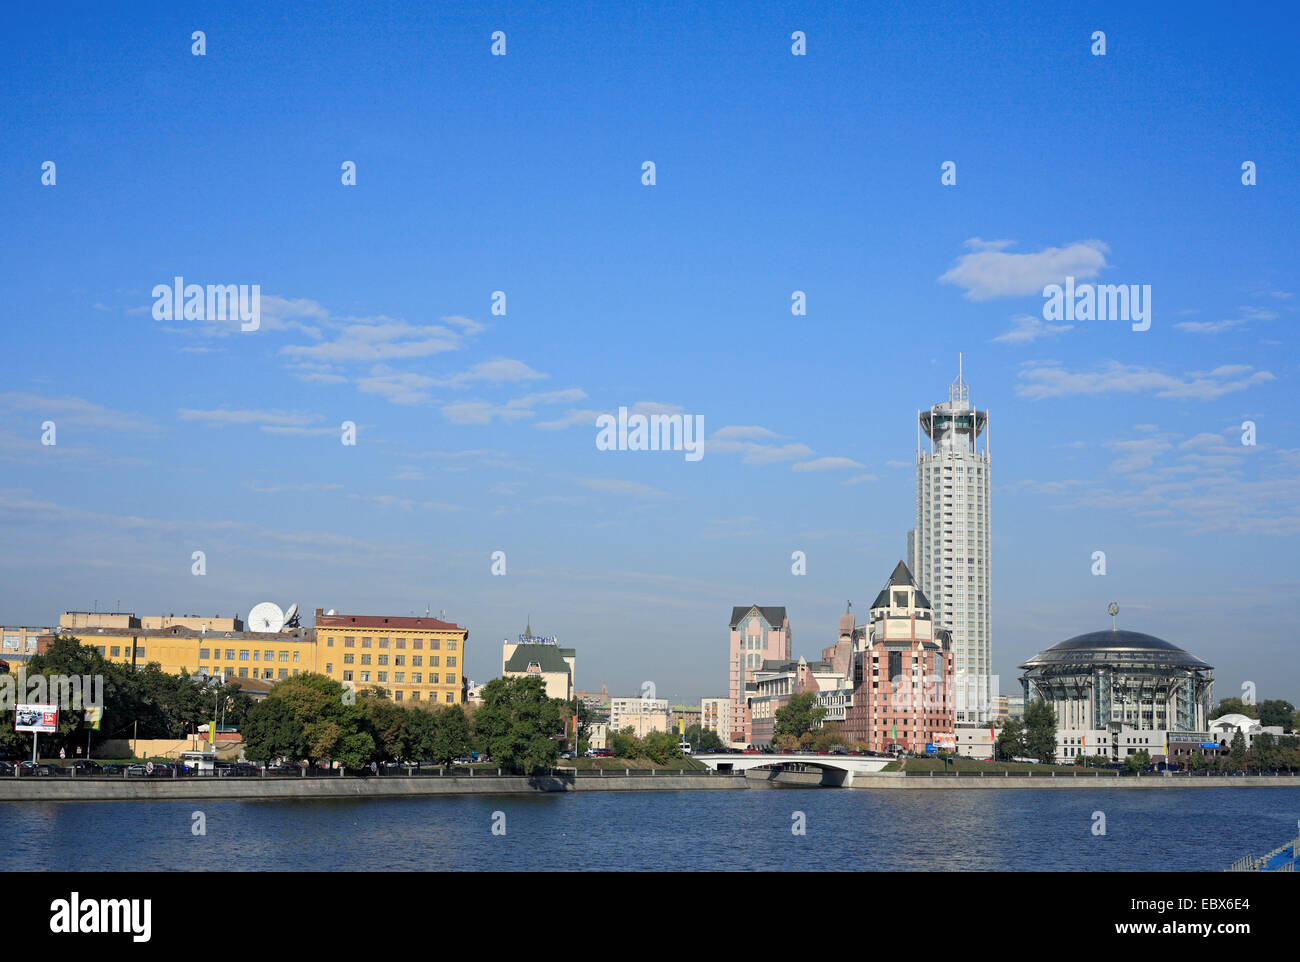 Bâtiment moderne avec la Maison de la musique, voir à partir de la rivière Moskva, Russie, Moscow Banque D'Images